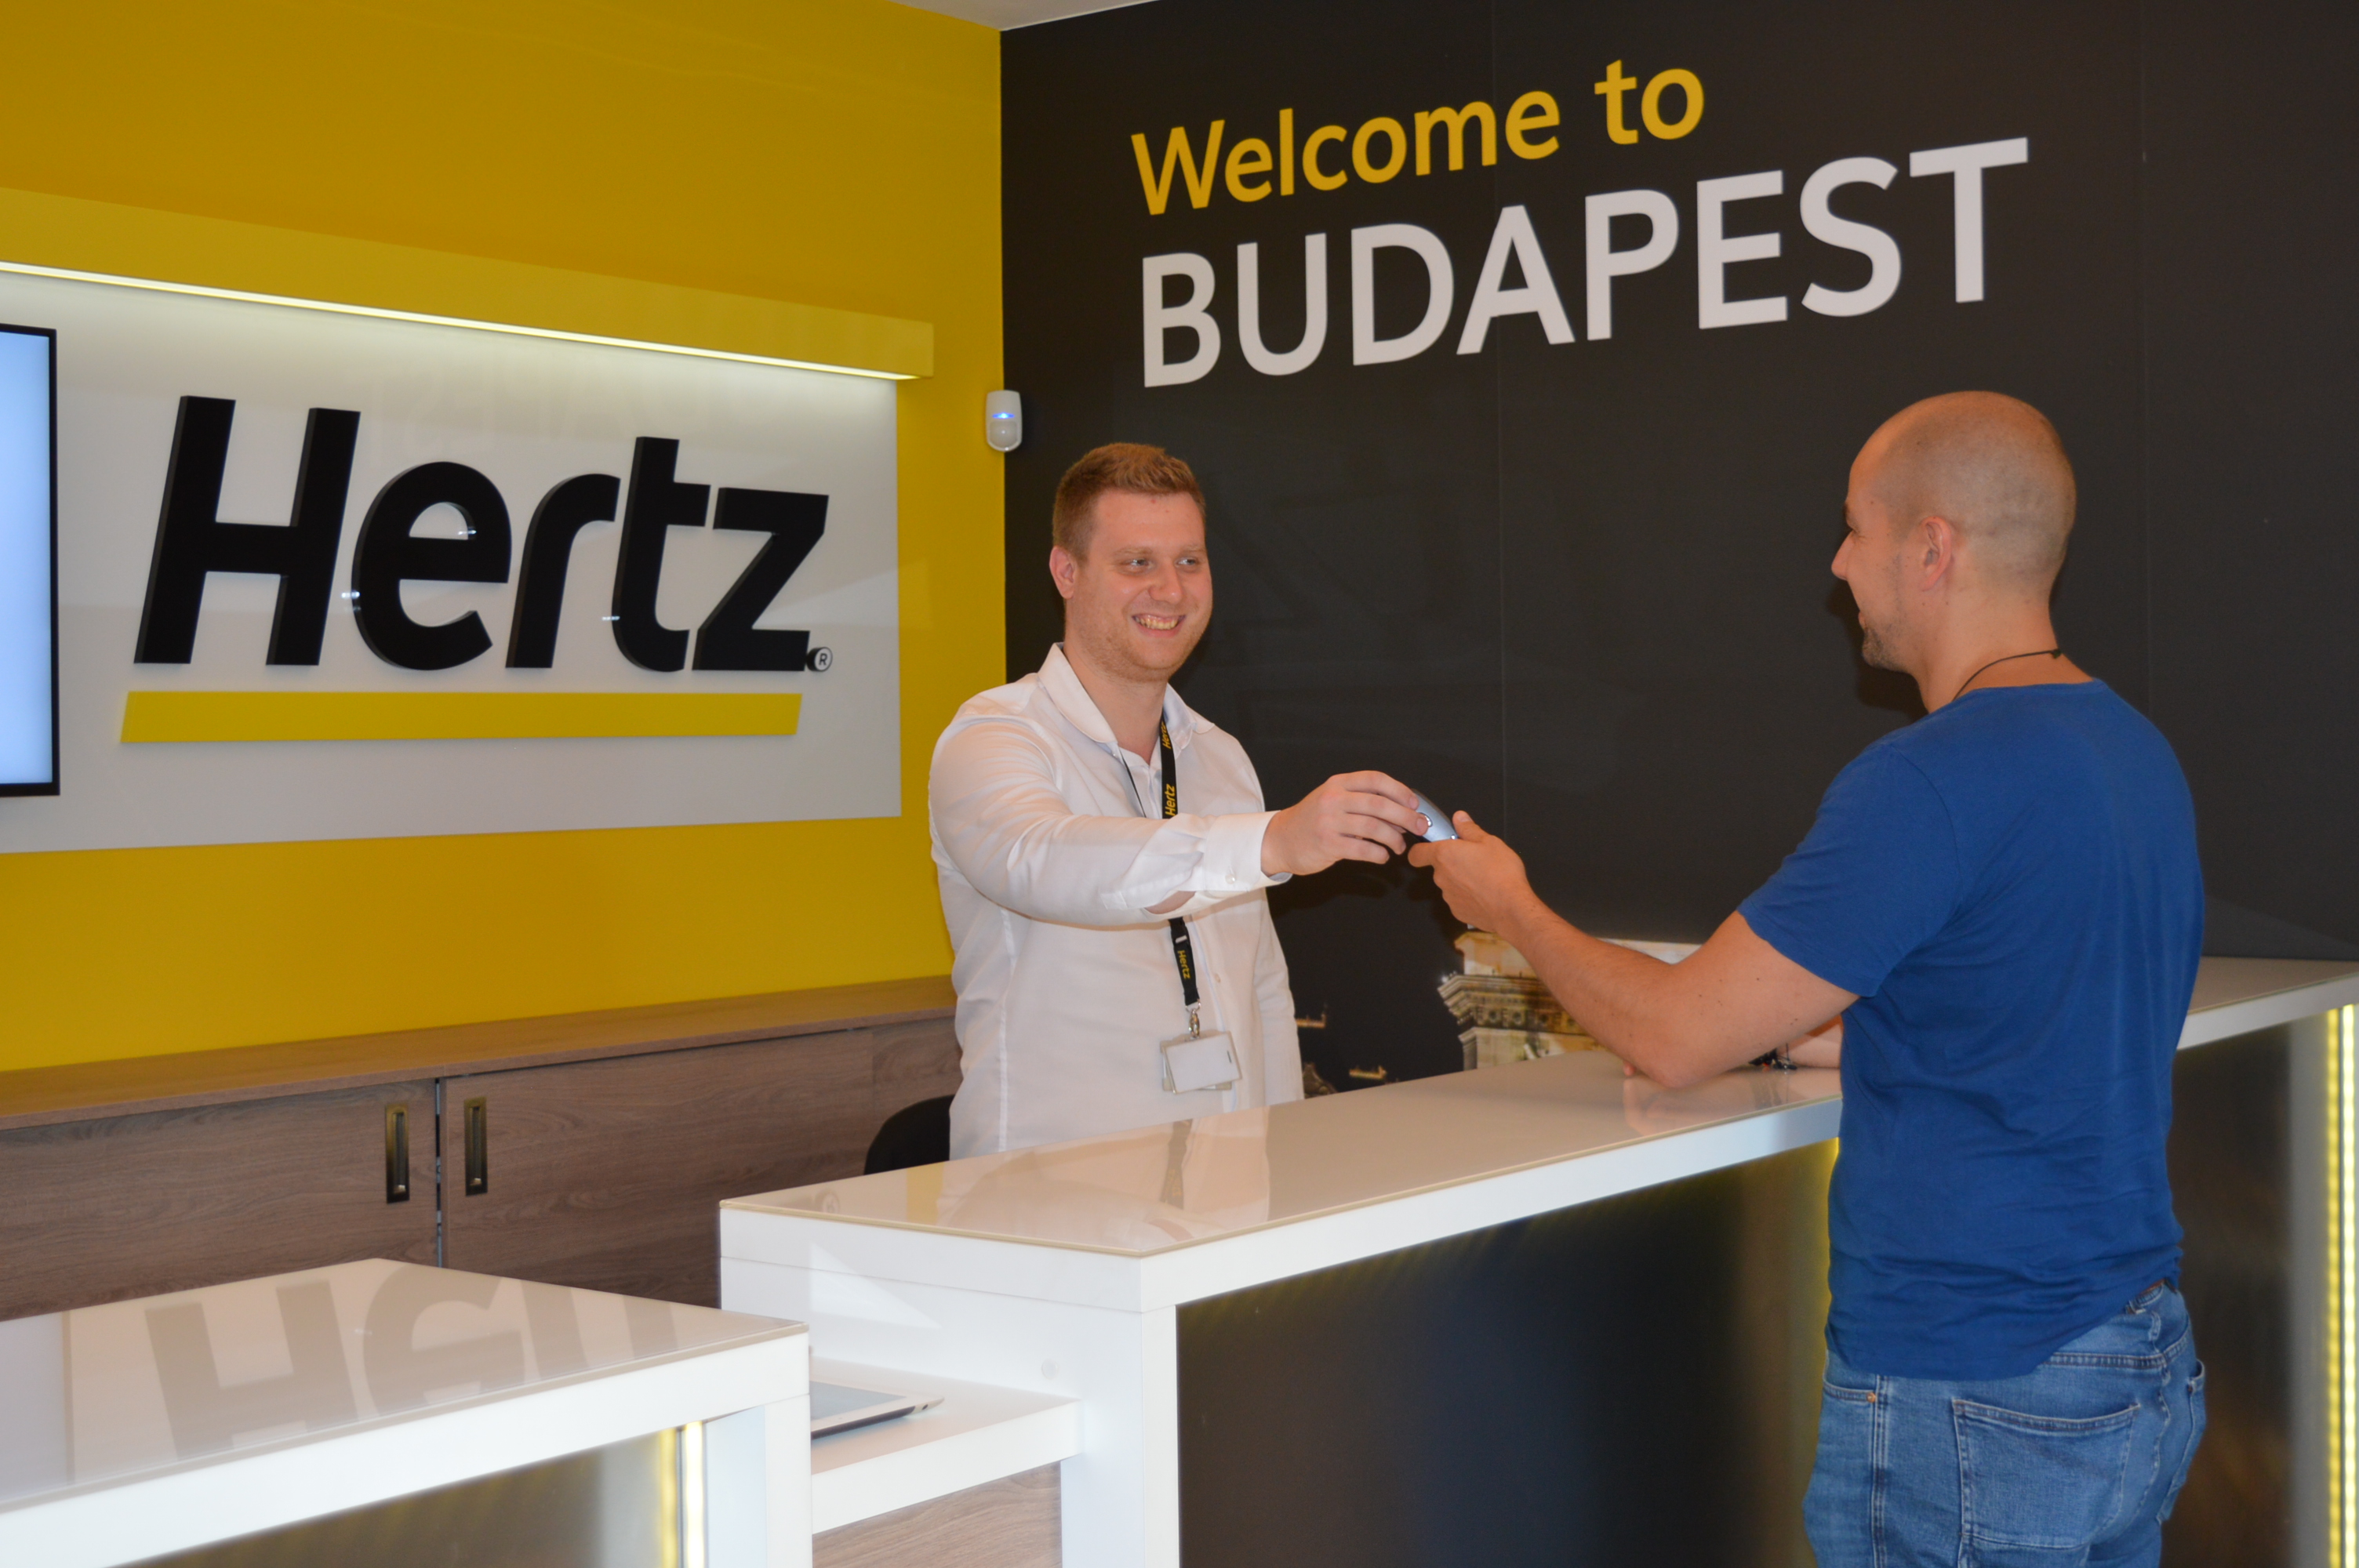 Hertz Pergola Office Moved To Budapest Marriott Hotel